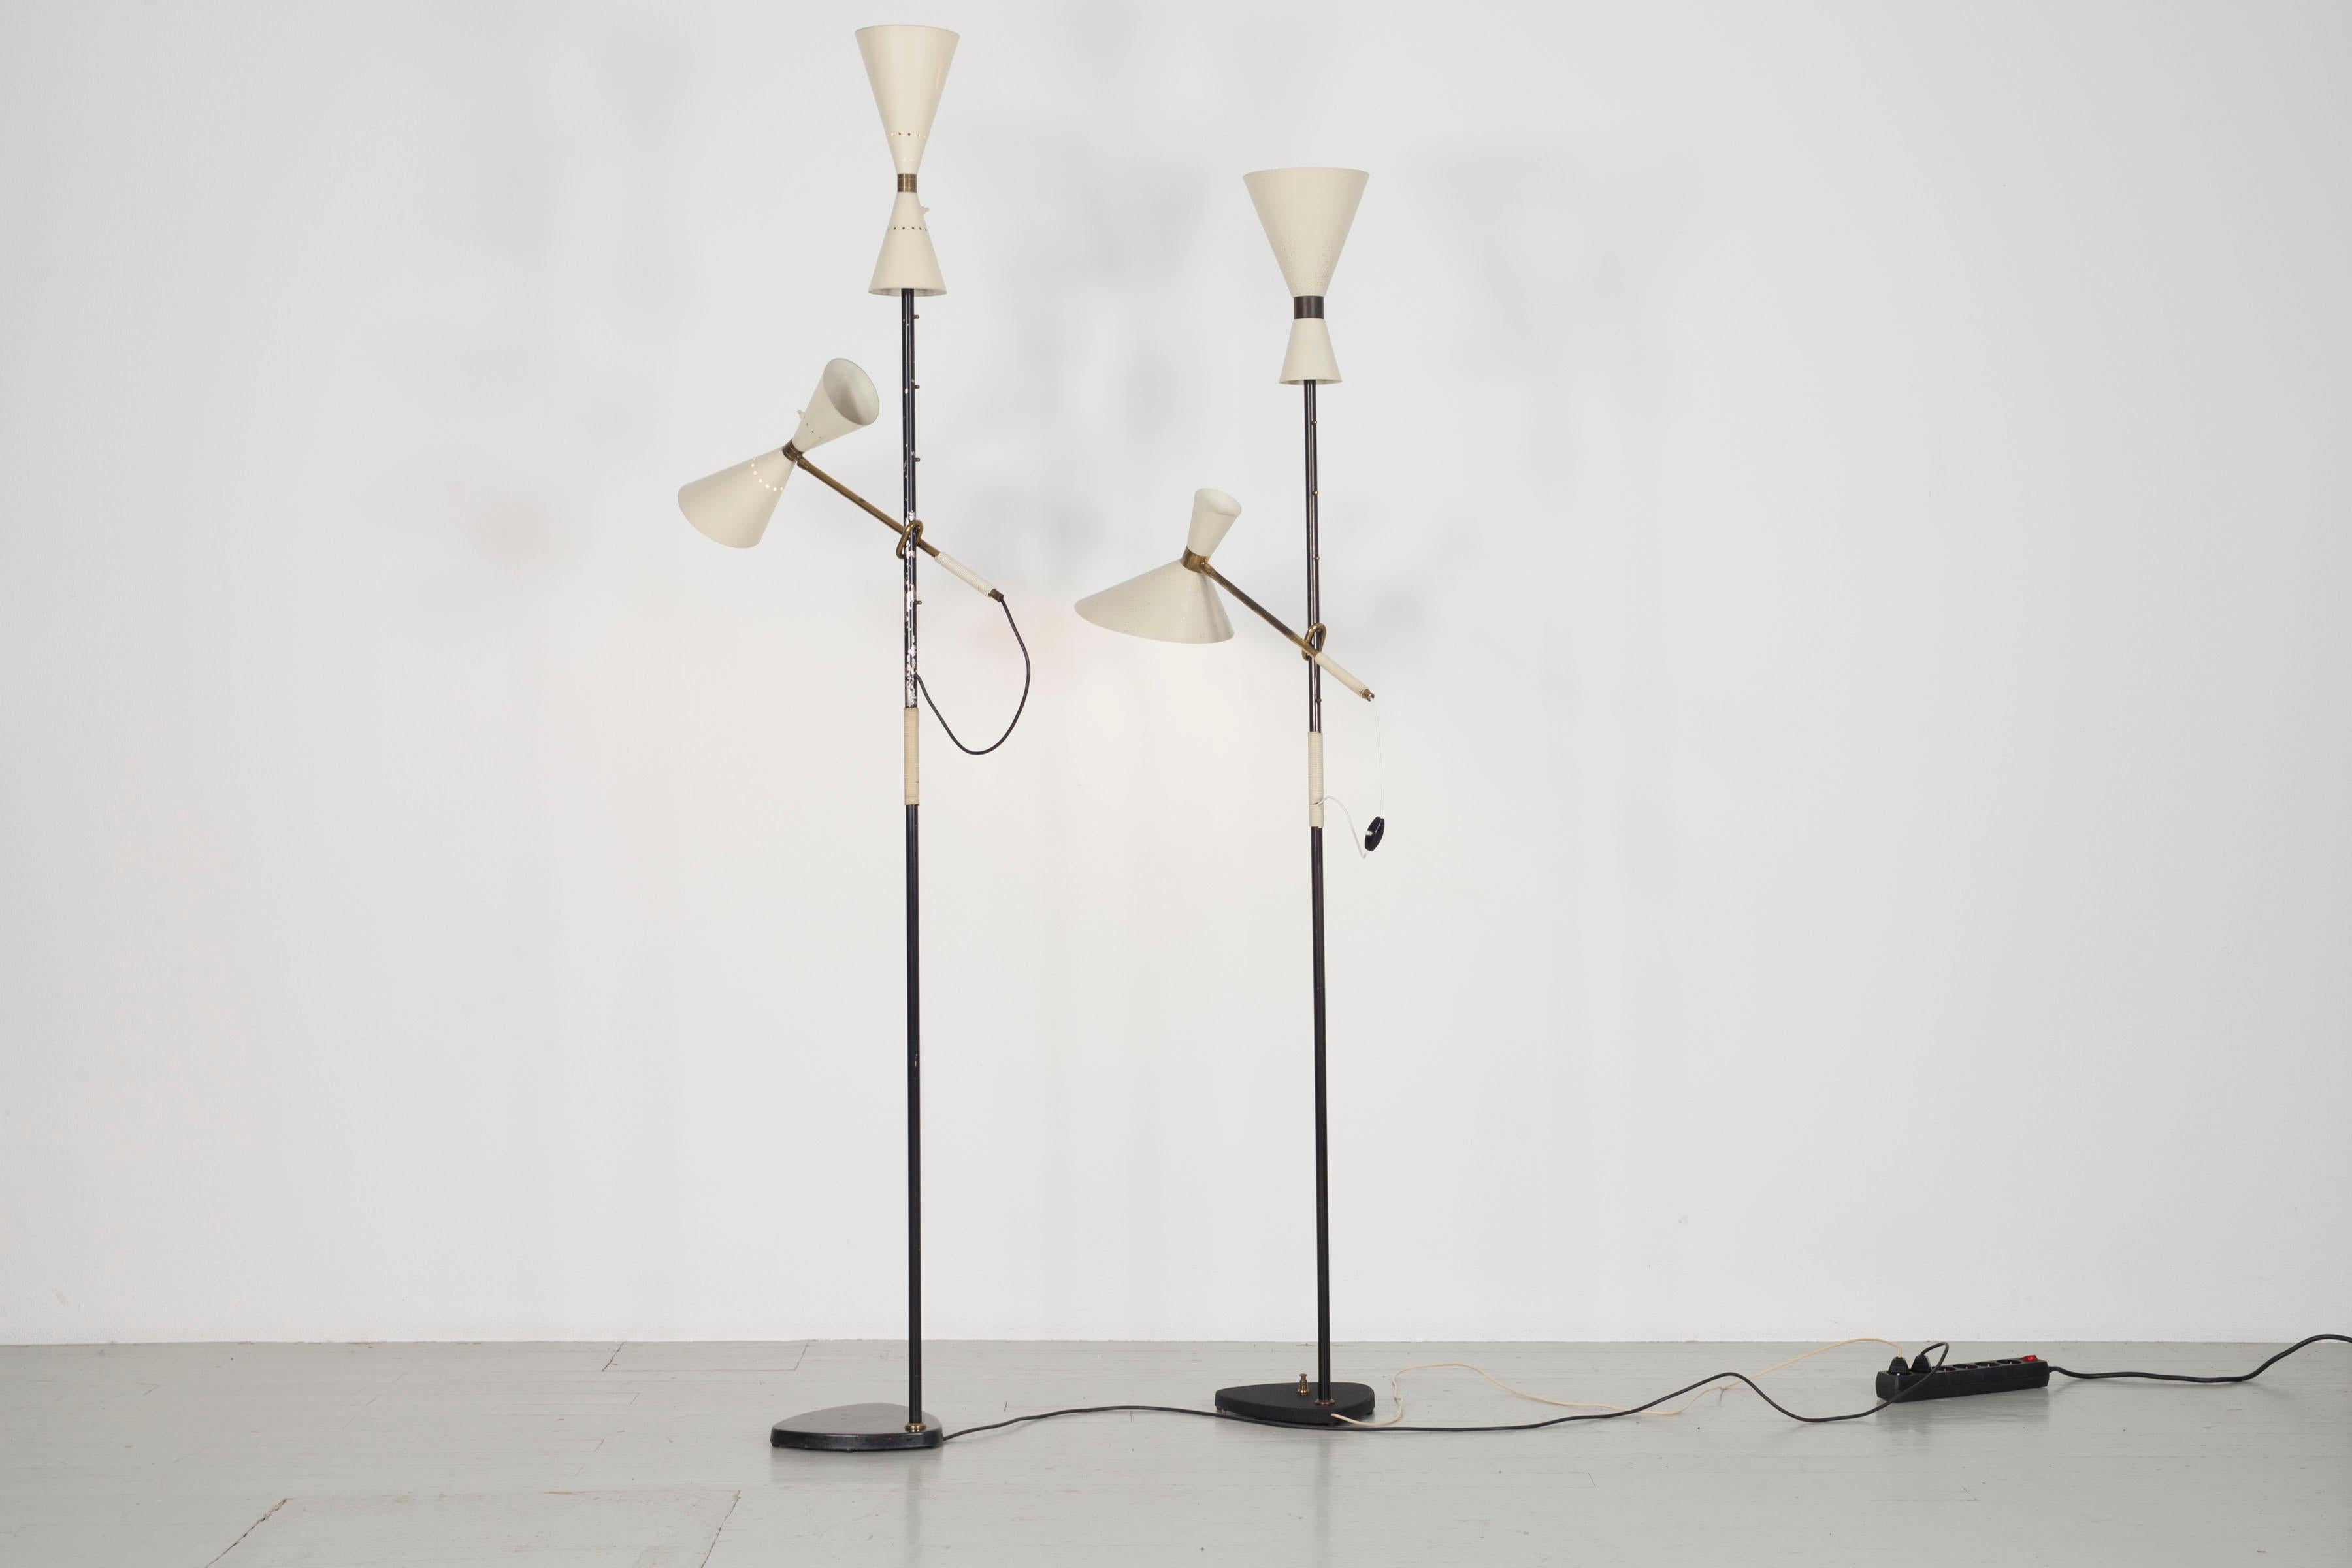 20th Century  Floor Lamp - Design by J.T. Kalmar, manufactured by Kalmar, Vienna, 1950s. 